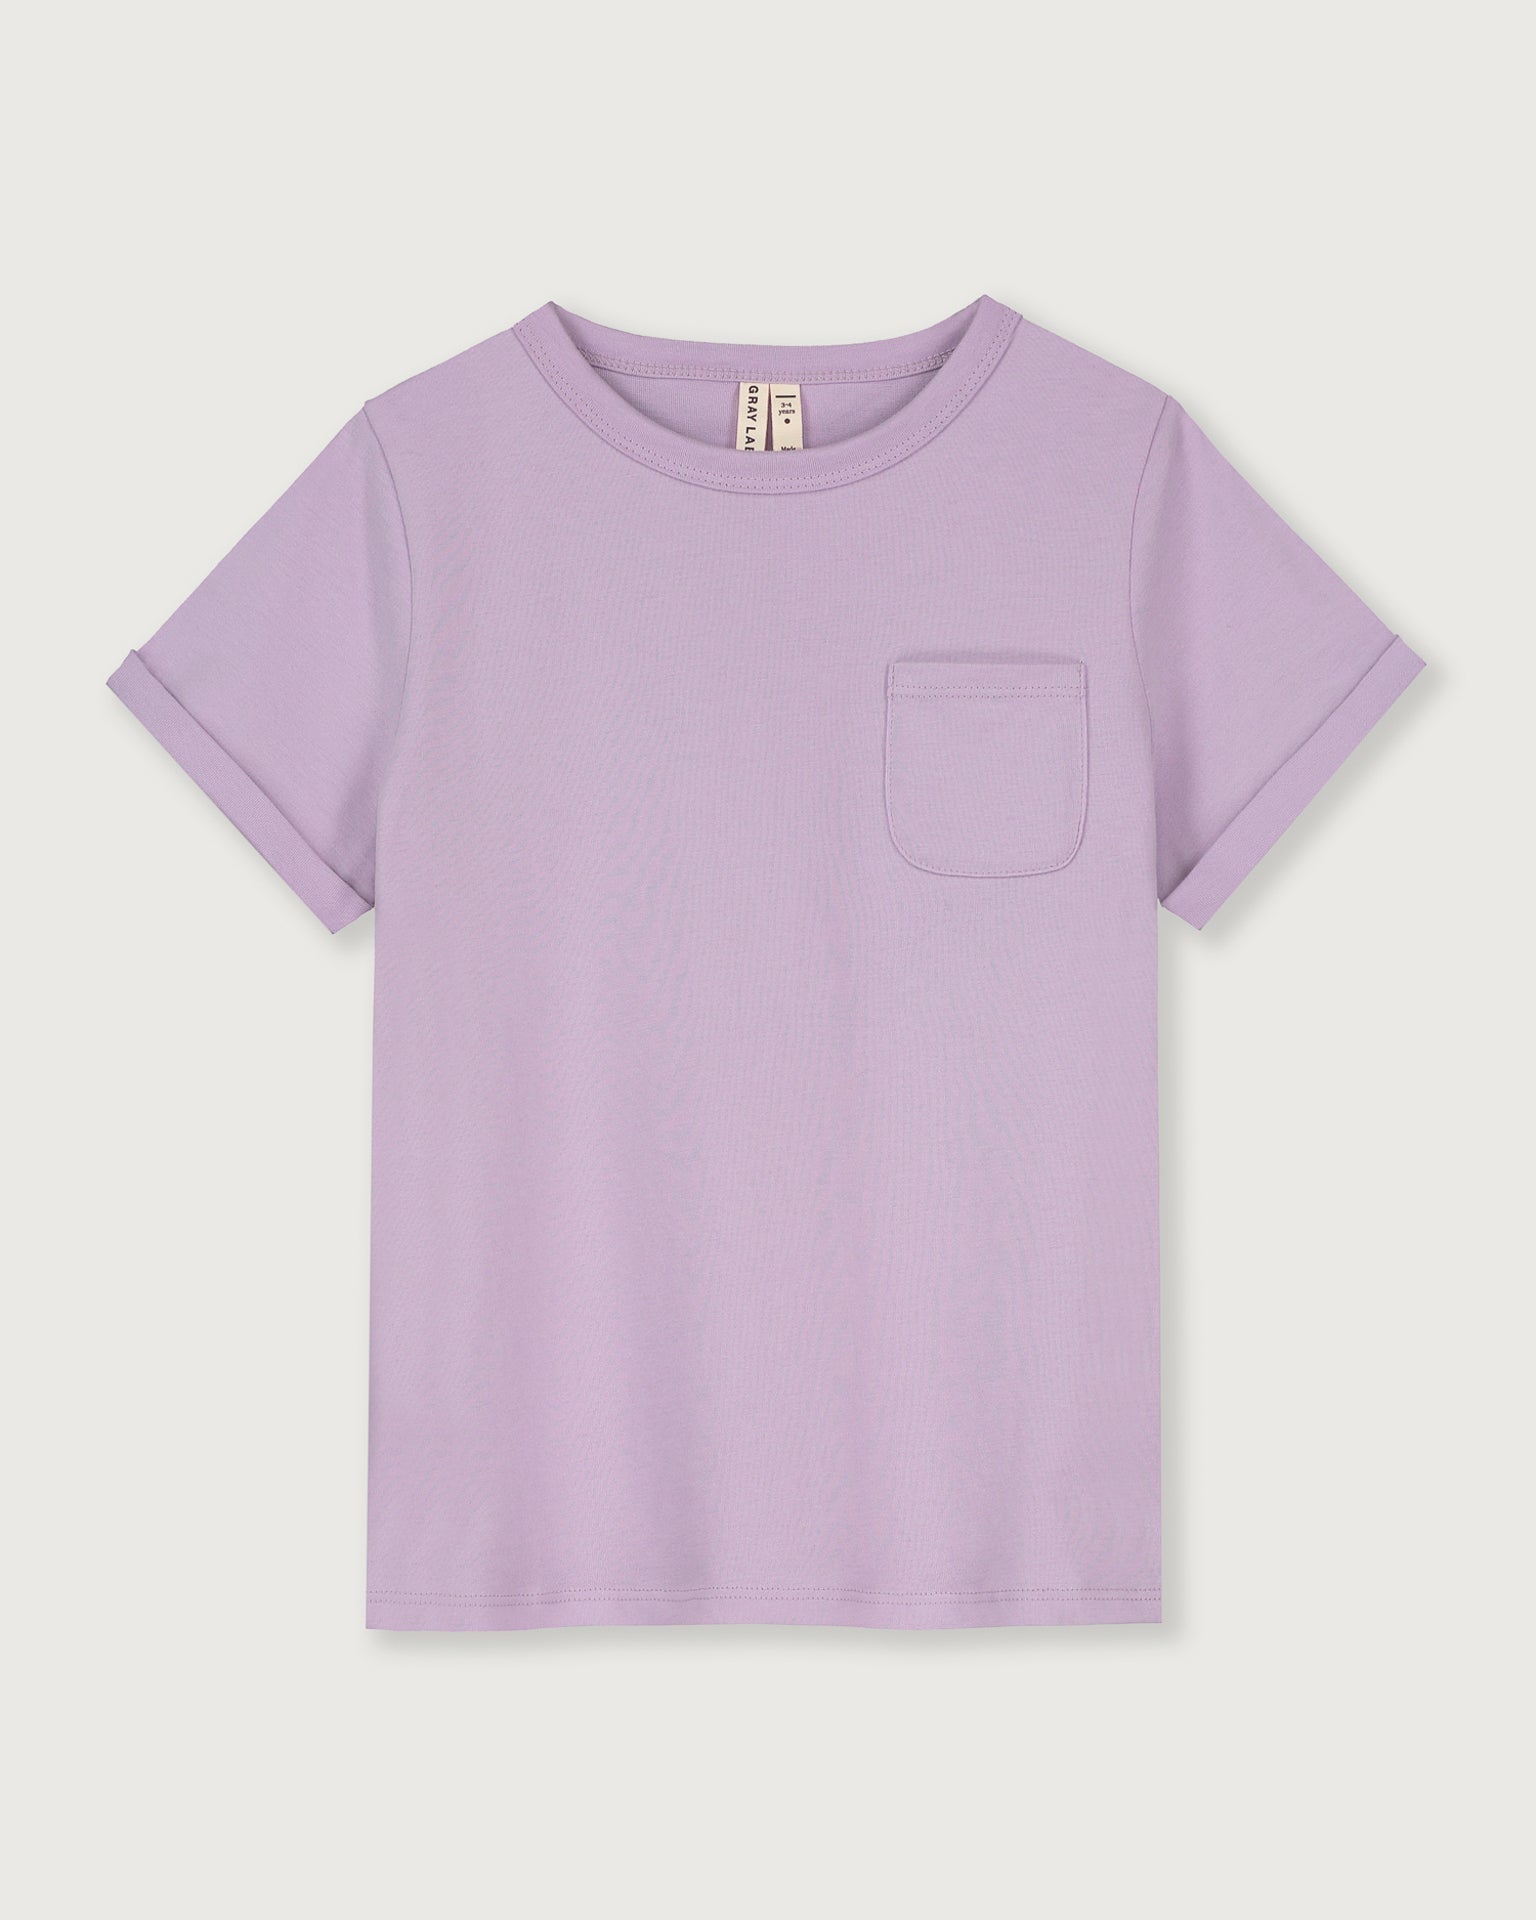 Little gray label girl short sleeve pocket tee in purple haze